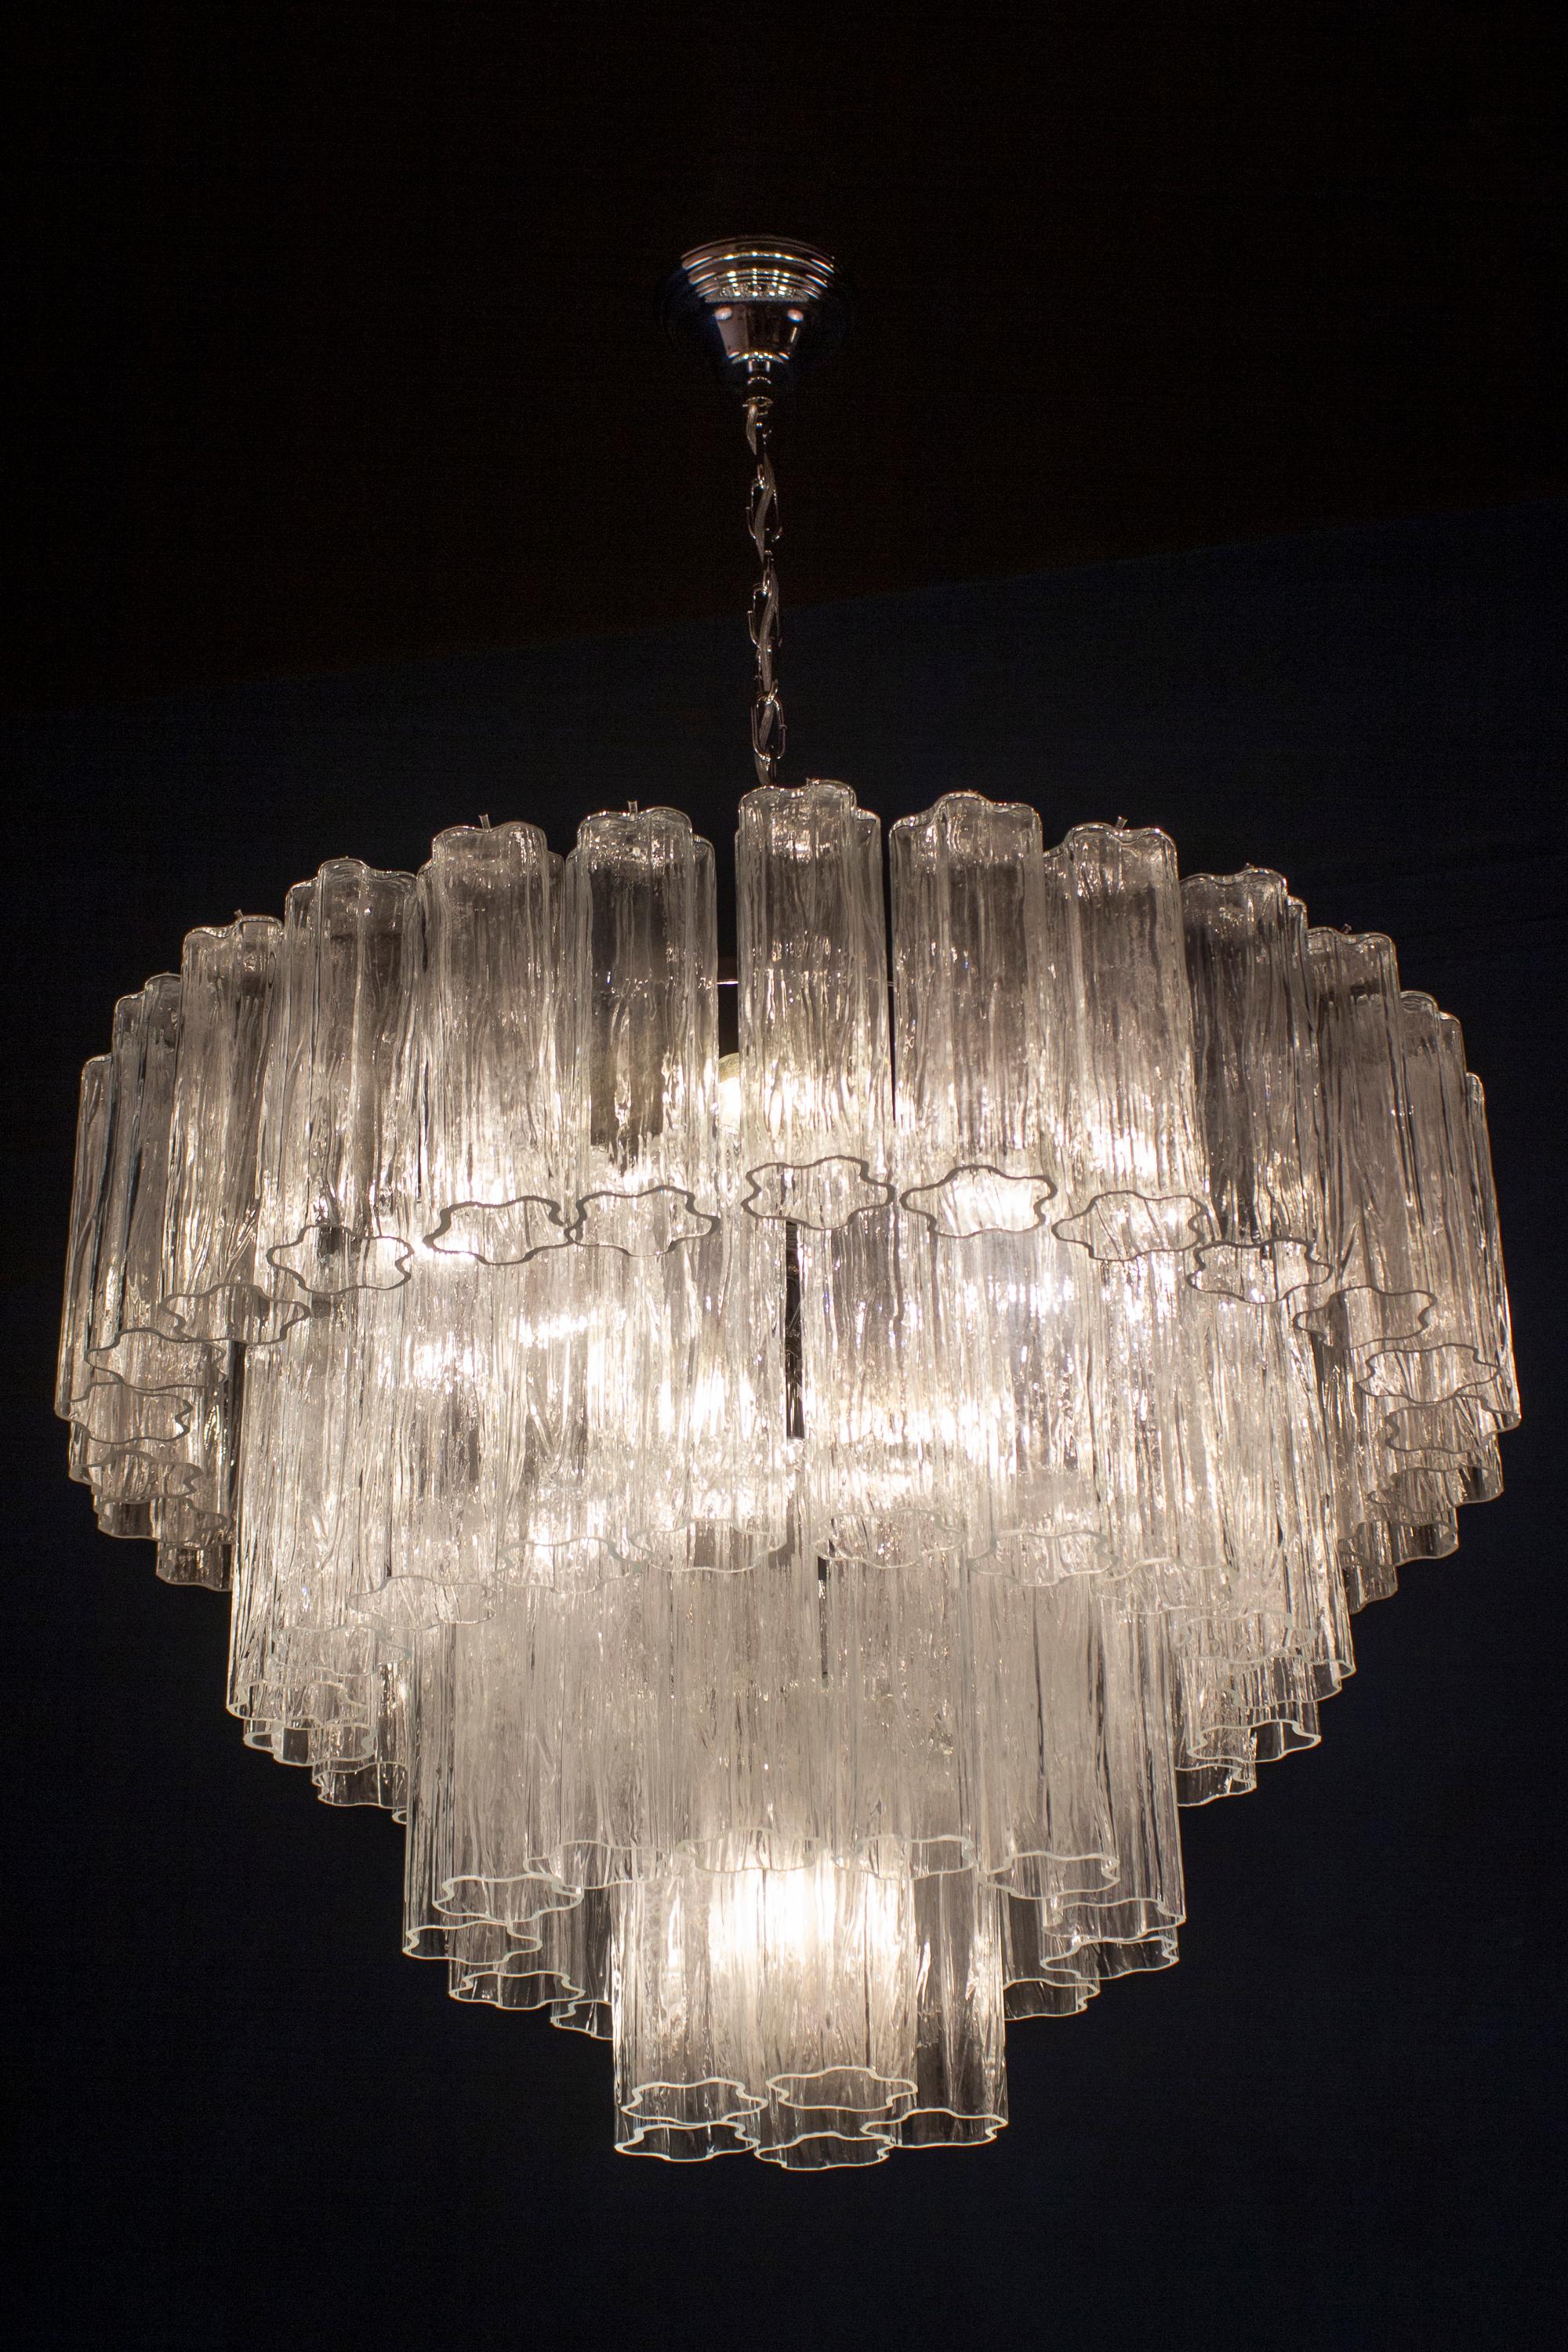 Superbe lustre avec 66 verres de Murano tronchi transparents de 20 cm de long.
Structure en métal nickelé sur quatre niveaux.
 Huit ampoules E 27
 Le prix est celui de l'article.

Ce luminaire peut être démonté et les verres emballés